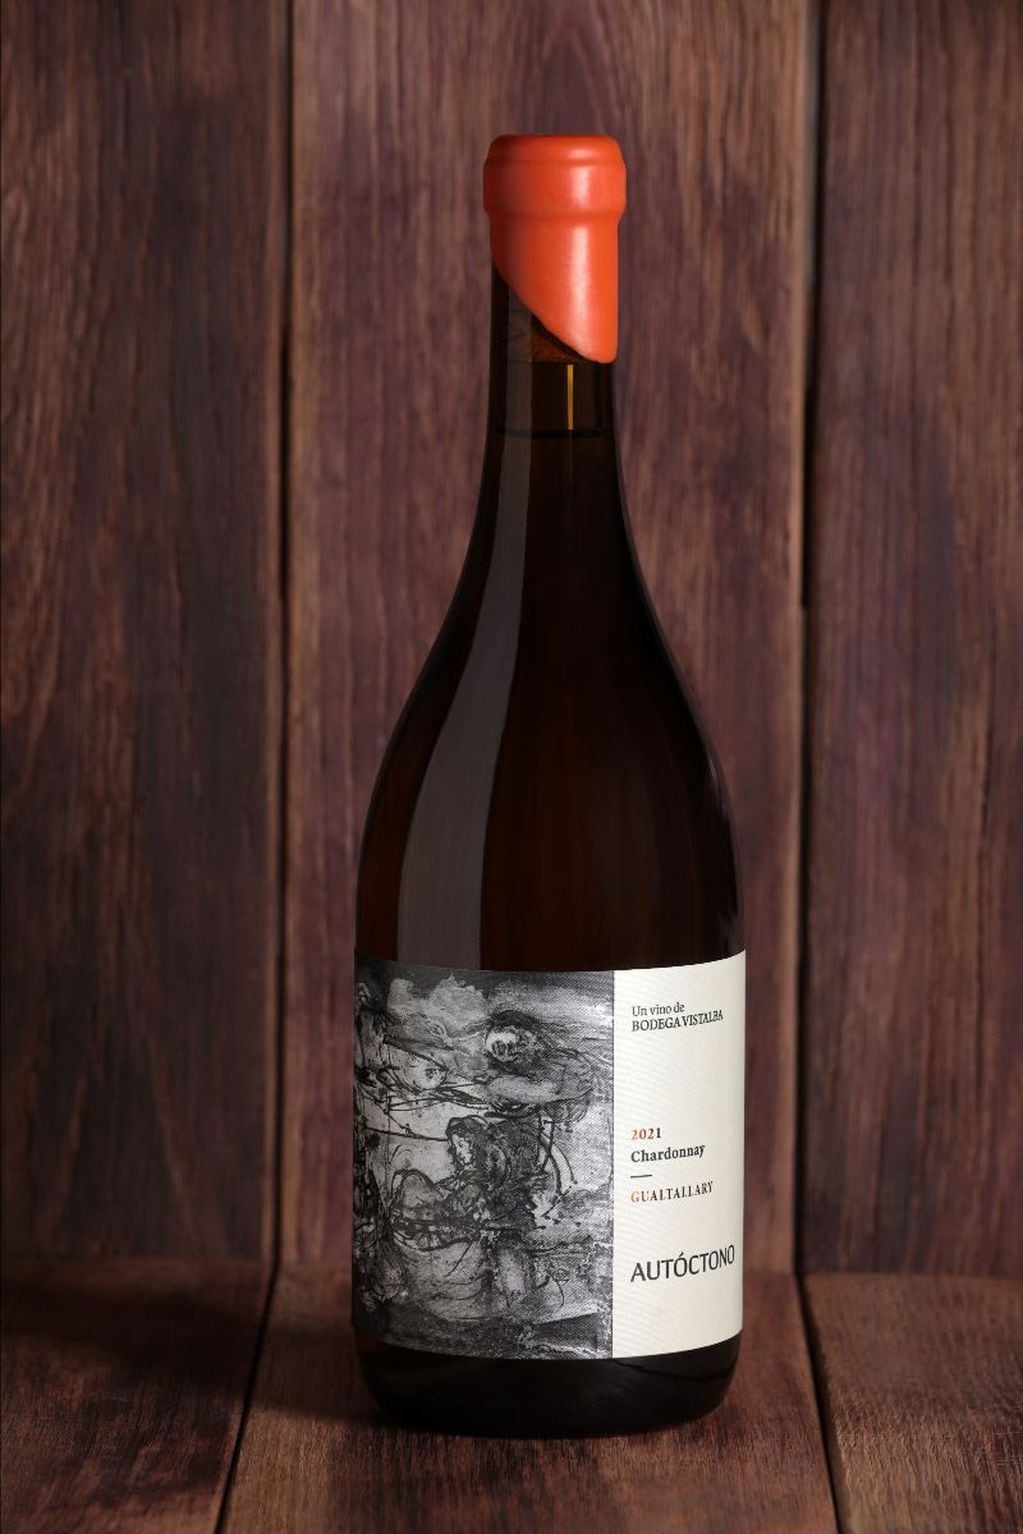 Autóctono, Chardonnay de Bodega Vistalba.